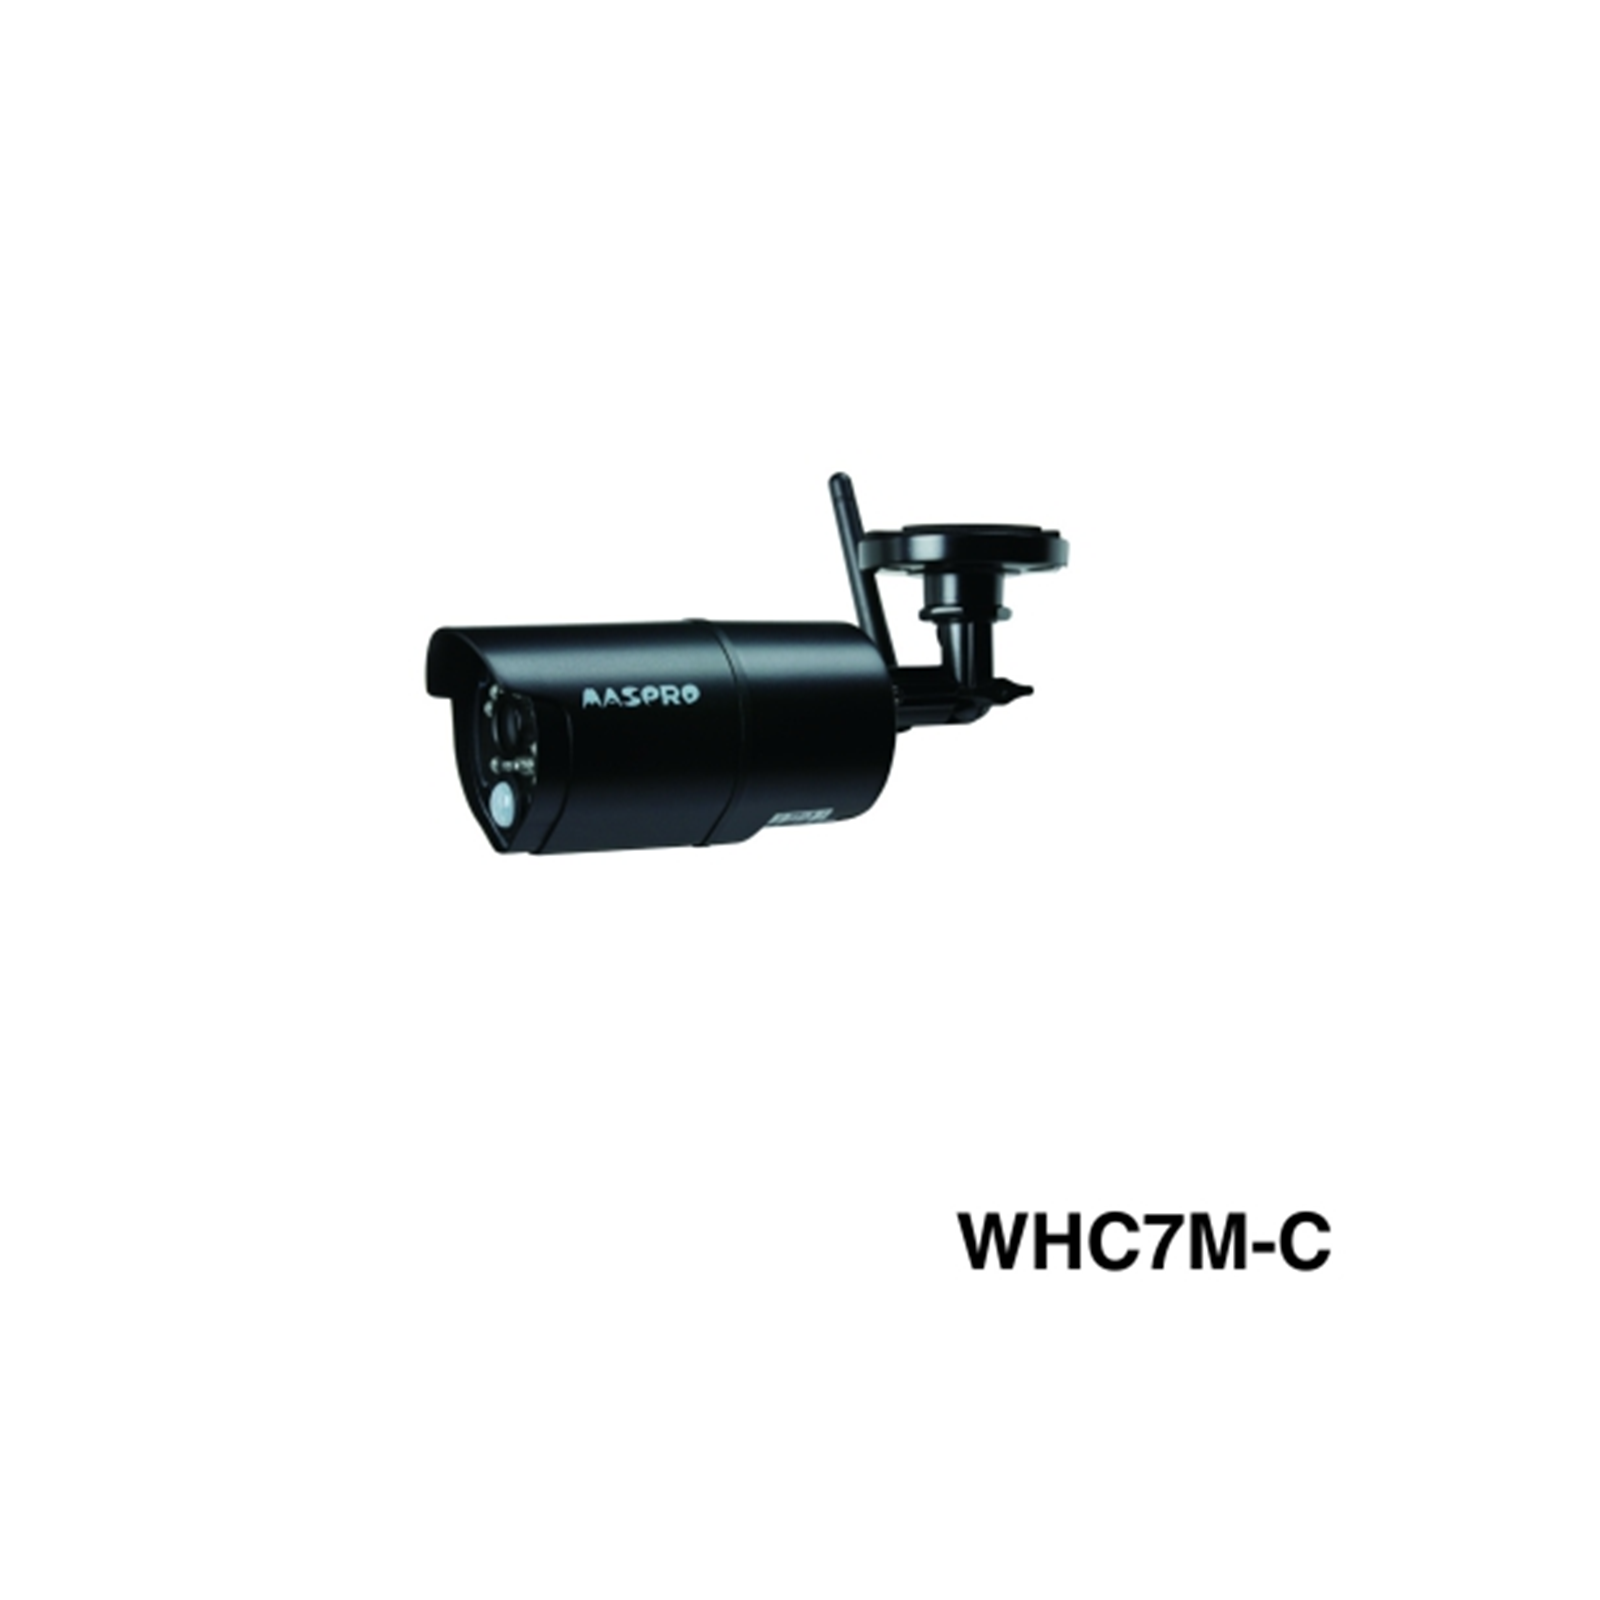 WHC7M-C